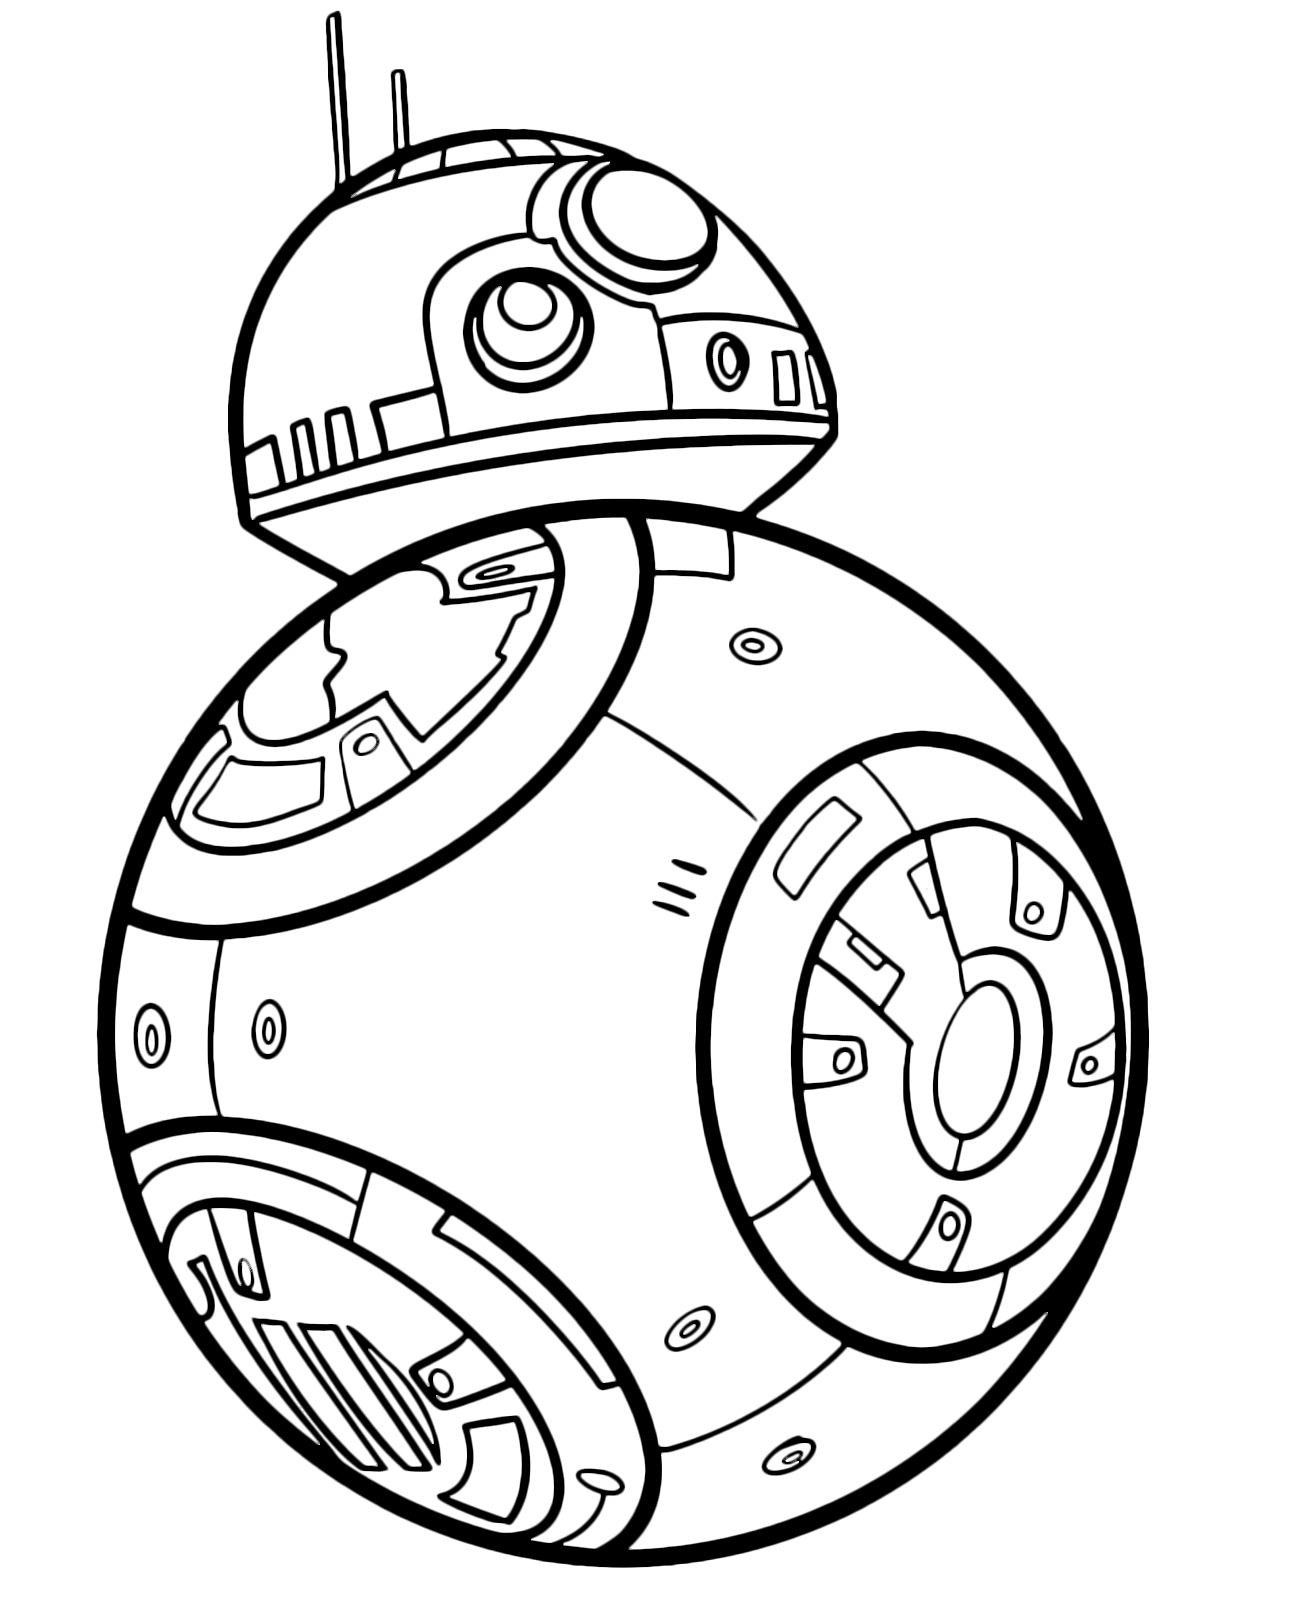 BB 8 il droide di Poe Dameron